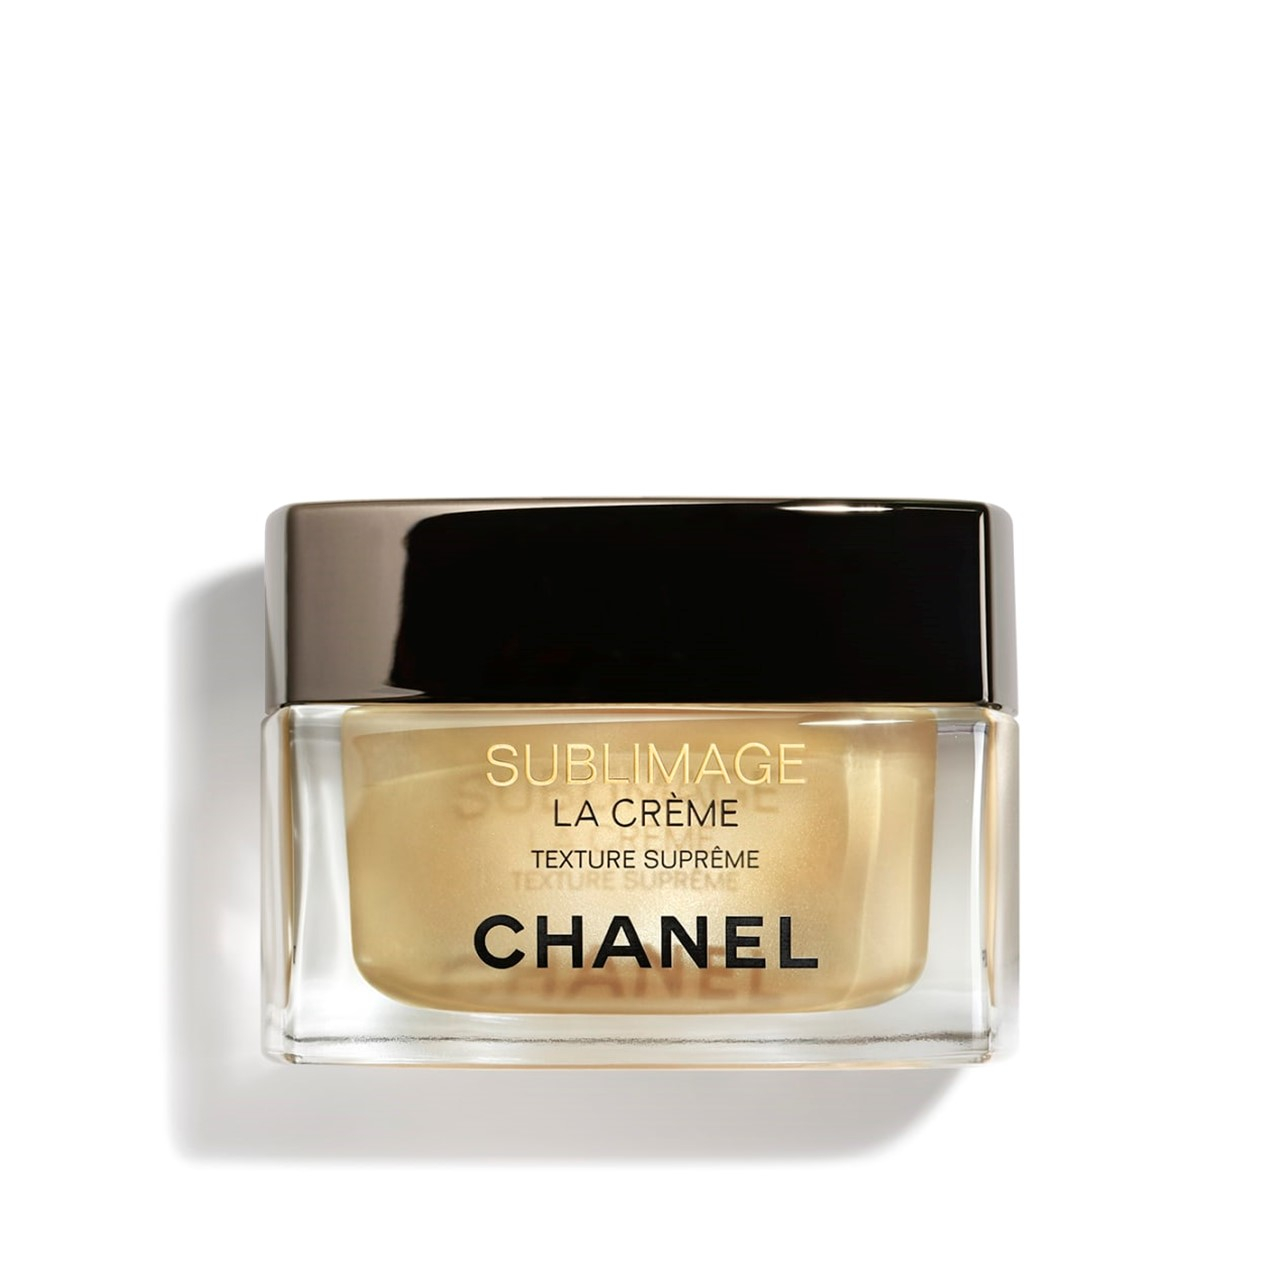 Buy CHANEL Sublimage La Crème Texture Suprême 50g (1.76oz) · USA